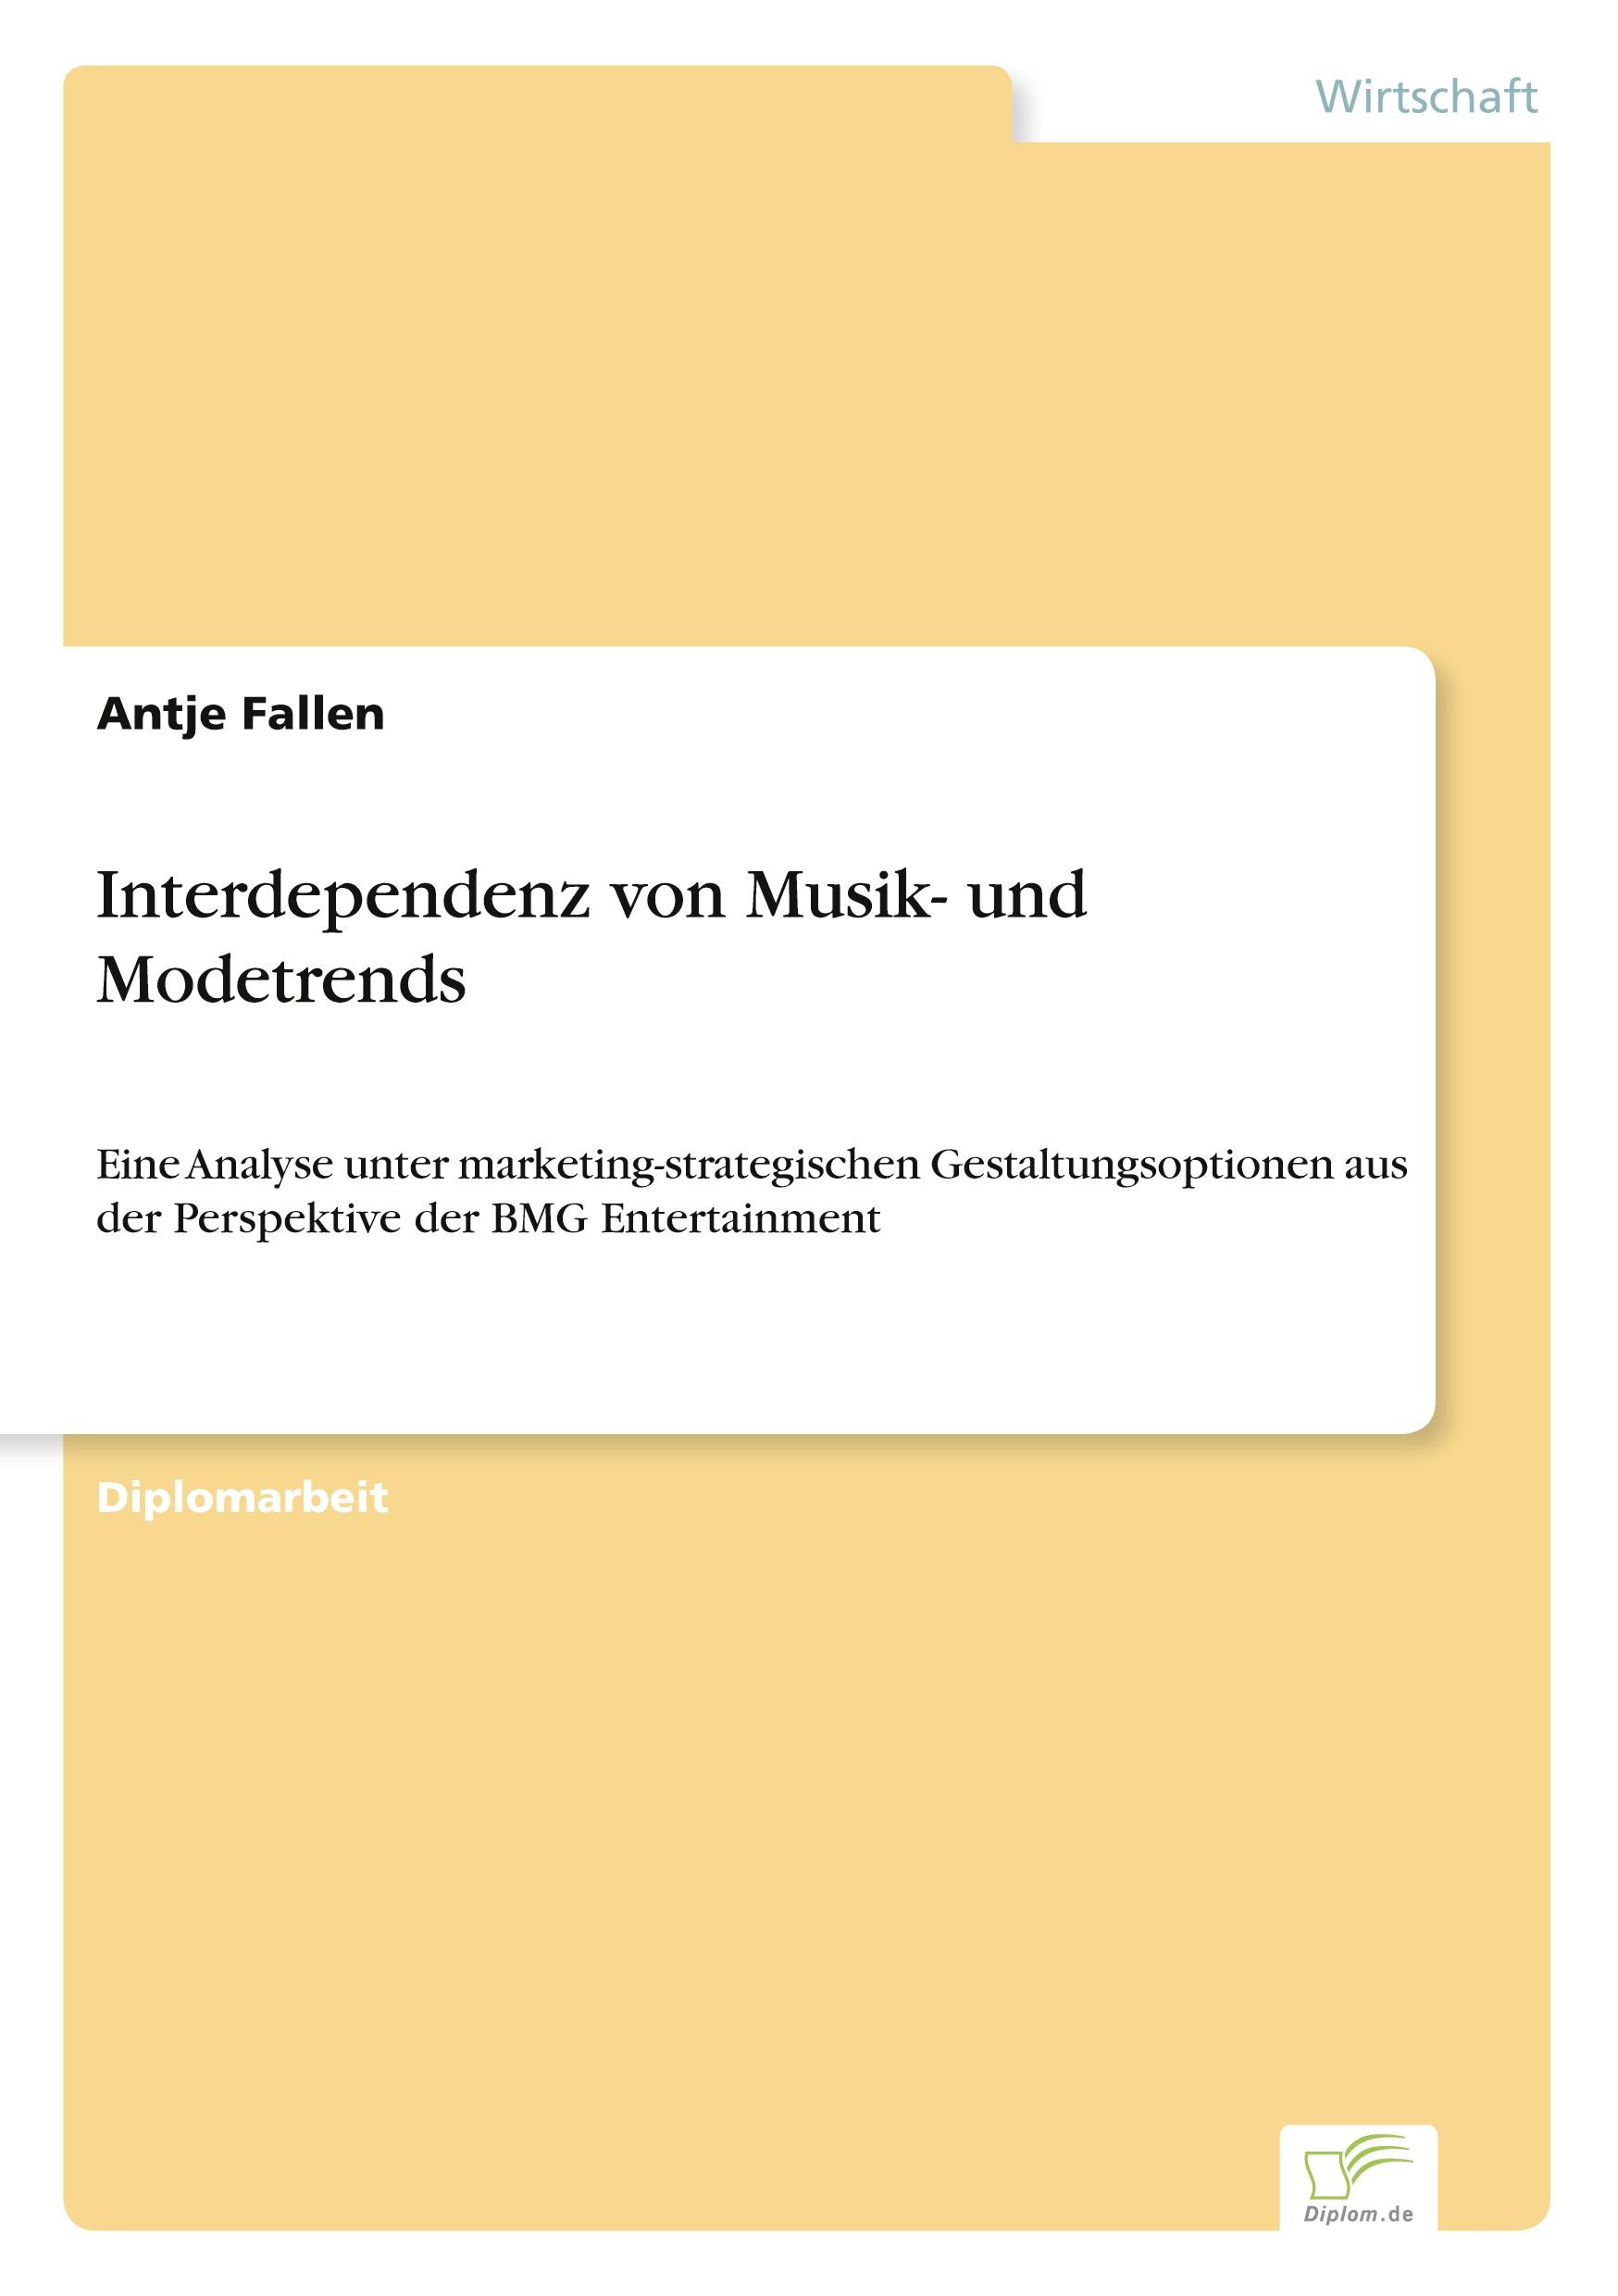 Bild vom Artikel Interdependenz von Musik- und Modetrends vom Autor Antje Fallen